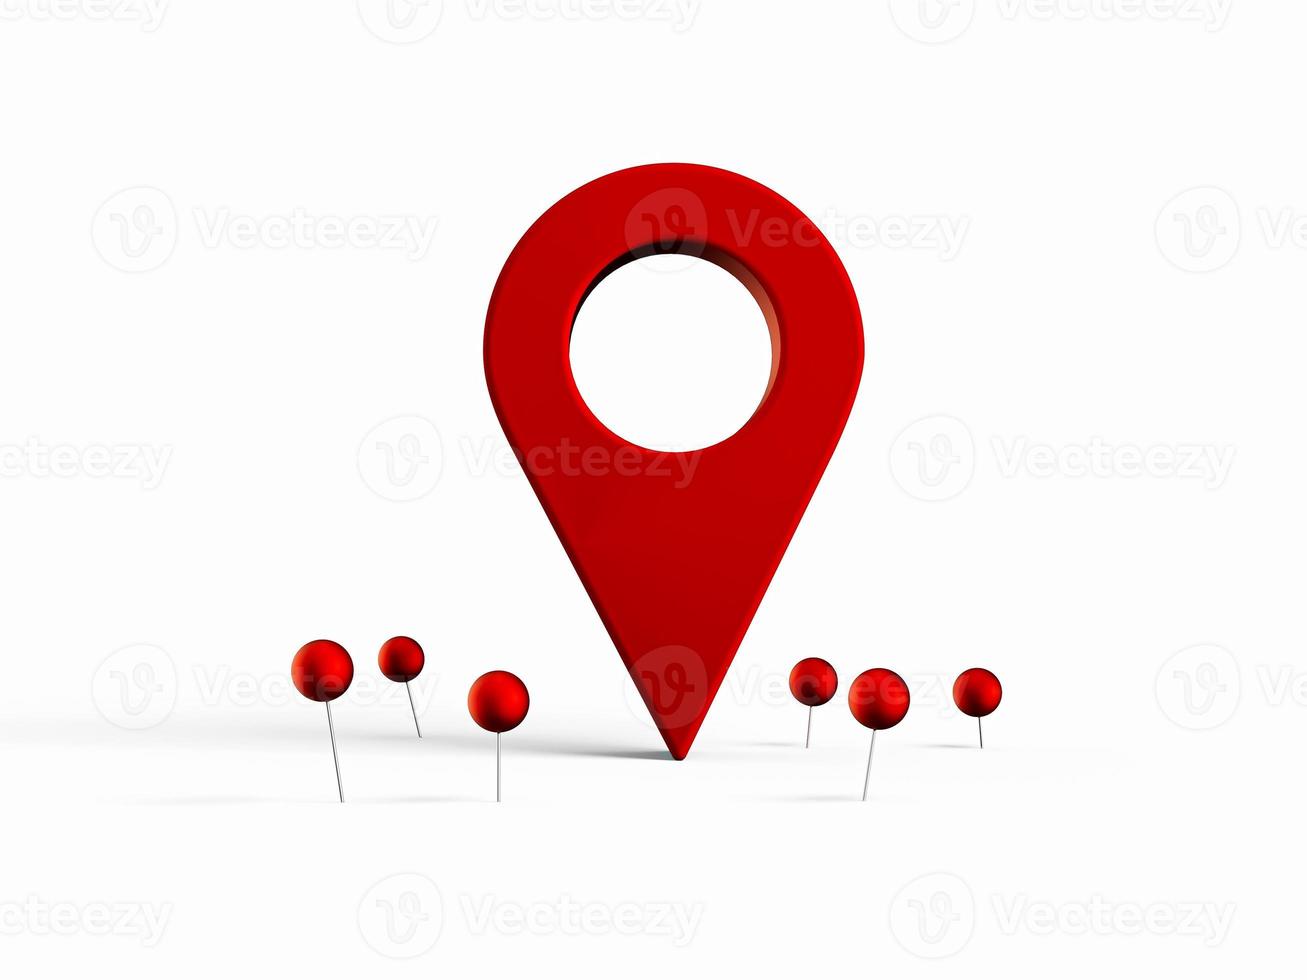 segno di localizzazione della mappa e della posizione pin o icona di navigazione segno su sfondo bianco con il concetto di ricerca. illustrazione 3d foto